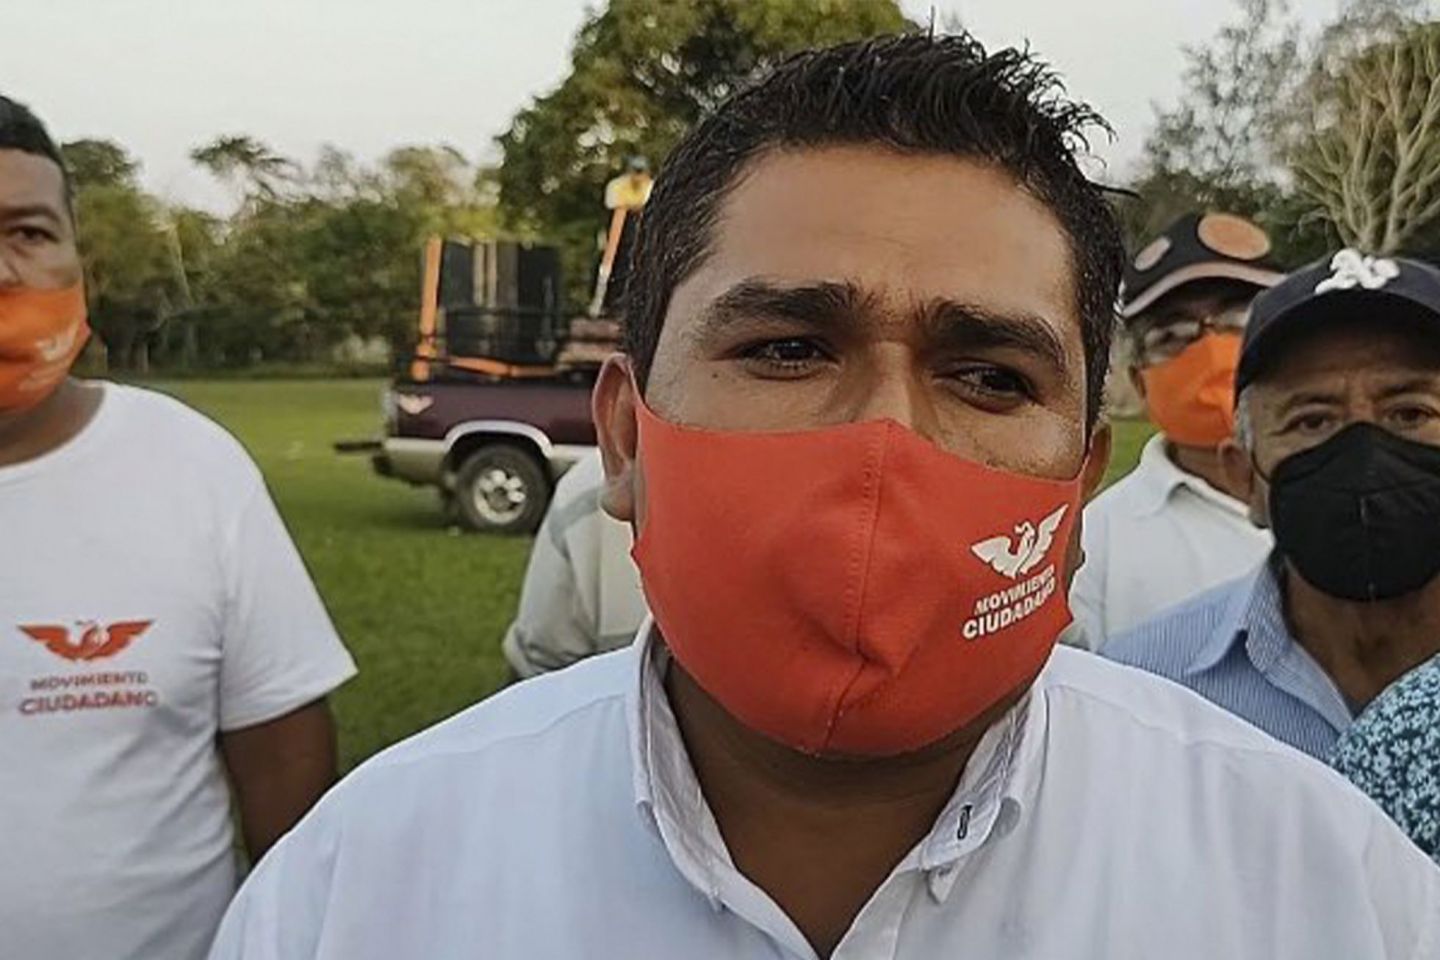 Historia de un crimen político: detenido el alcalde electo por el asesinato de un candidato en Veracruz